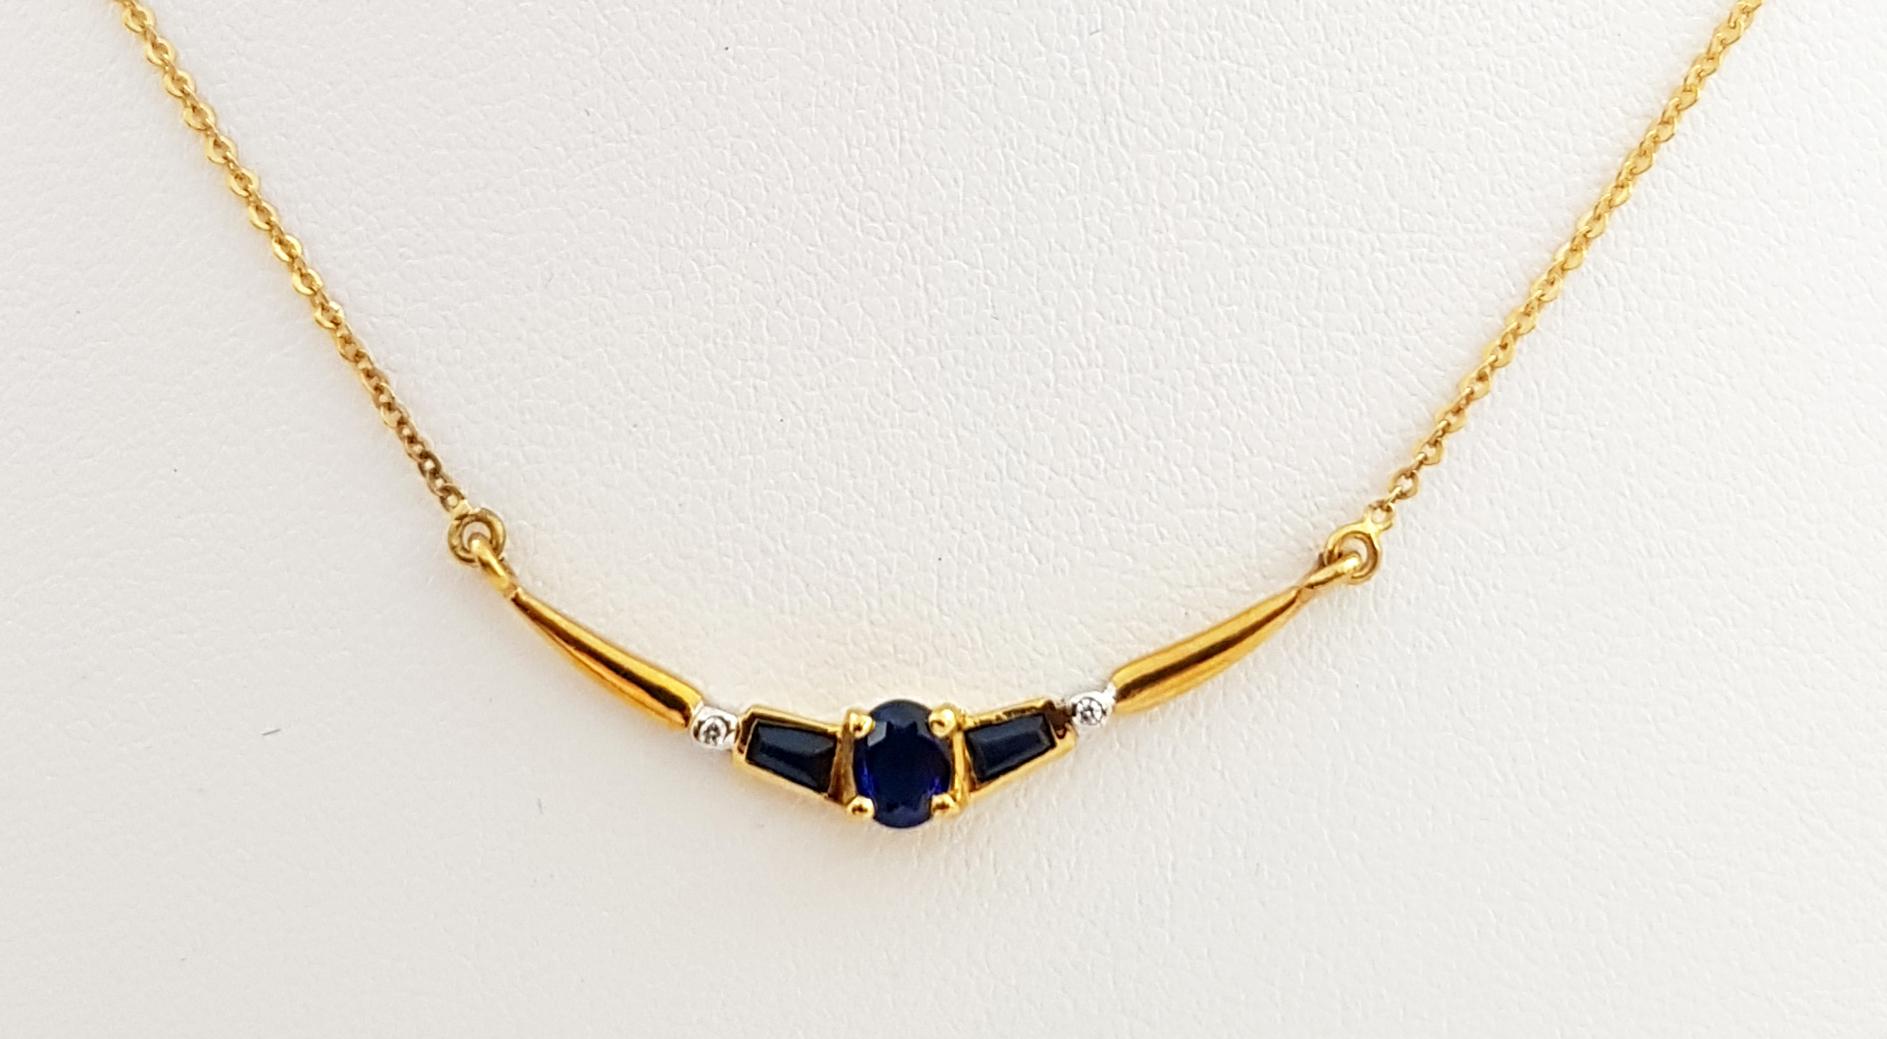 Blauer Saphir 0,50 Karat mit Diamant 0,01 Karat Halskette in 18 Karat Goldfassung

Breite: 2,0 cm 
Länge: 43,5 cm
Gesamtgewicht: 2,7 Gramm

